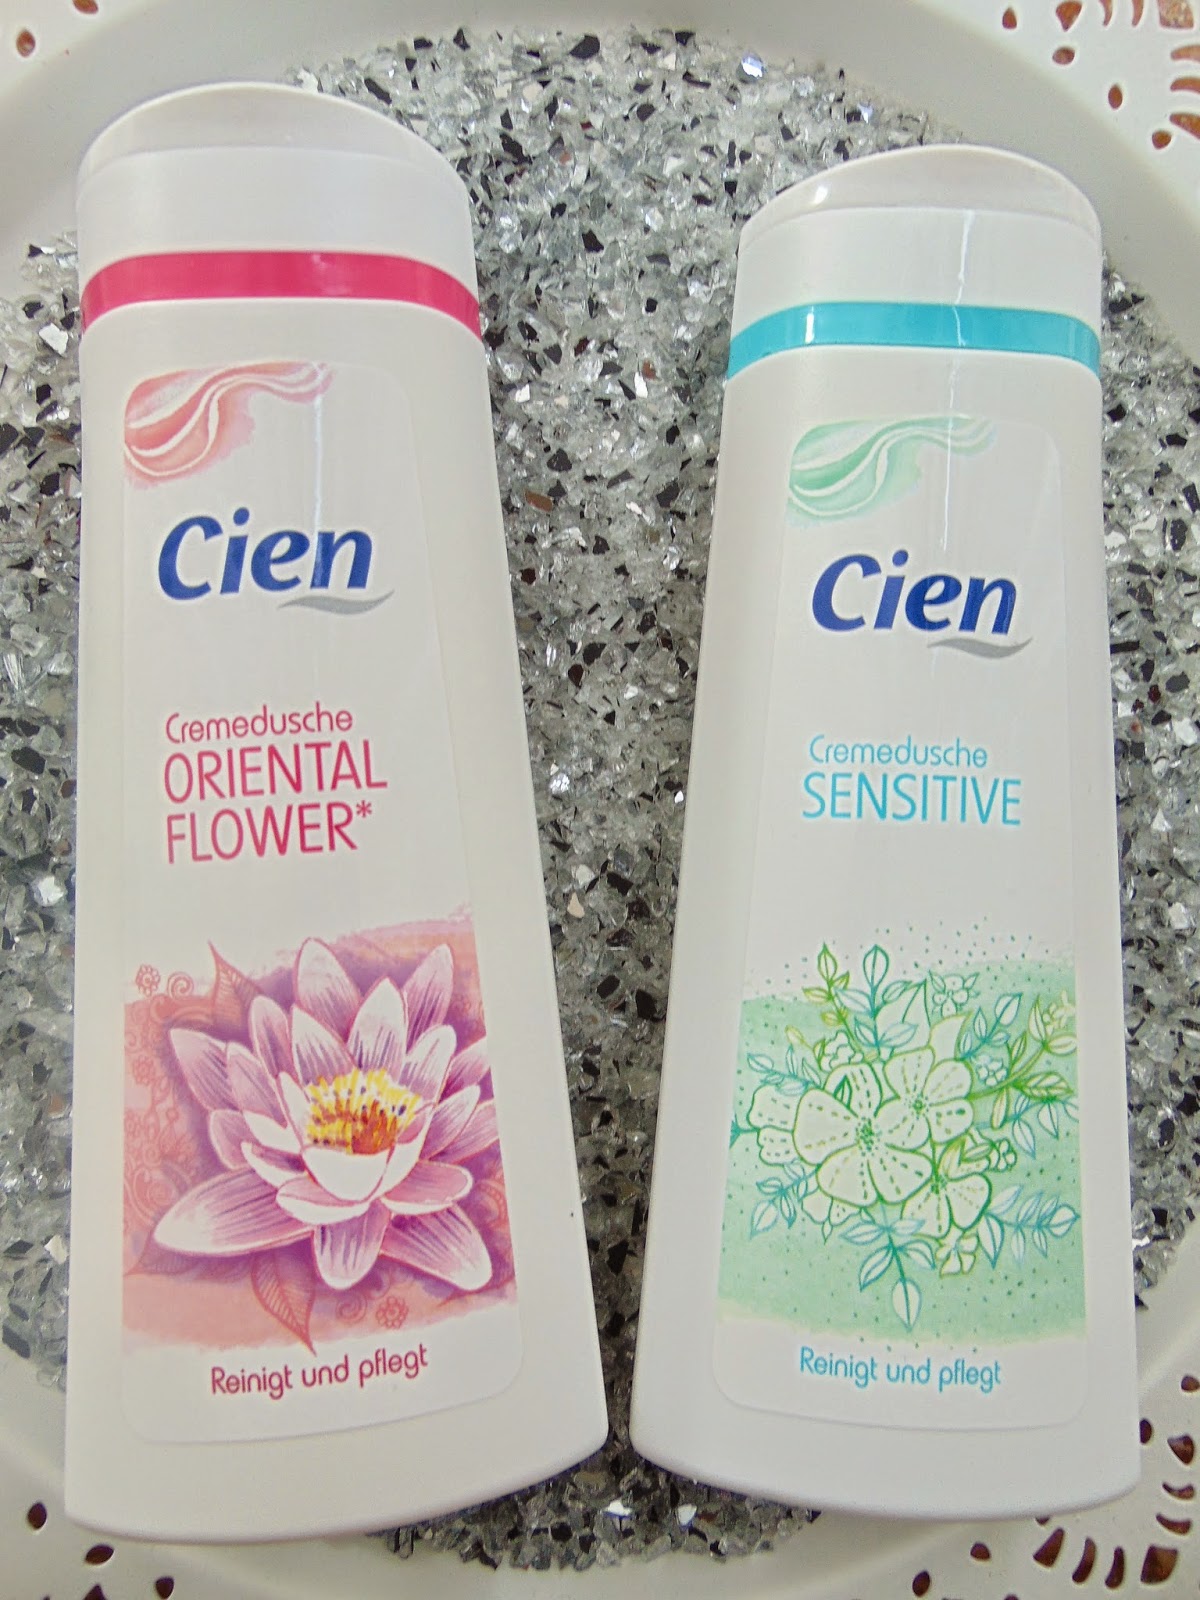  Cien - Cremedusche - Oriental Flower & Sensitive - www.annitschkasblog.de